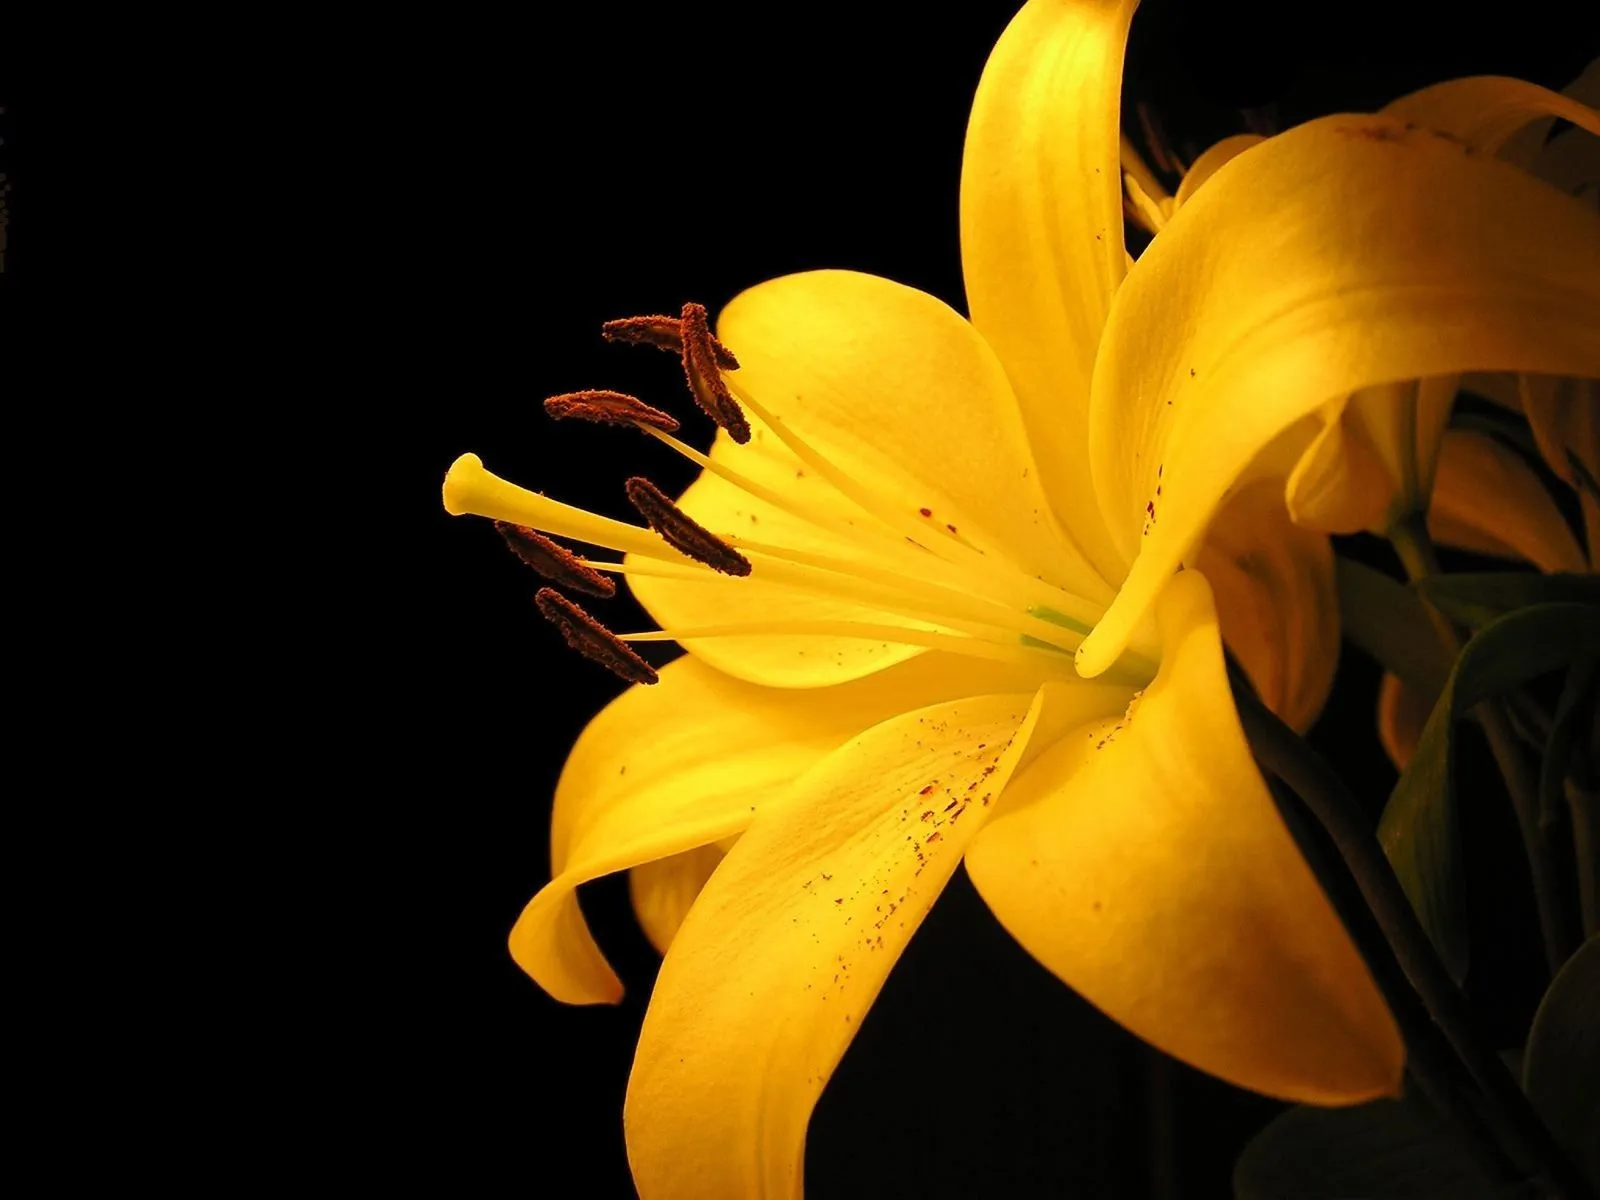 Flores Amarillas en HD - Yellow Flowers | Fotos e Imágenes en ...